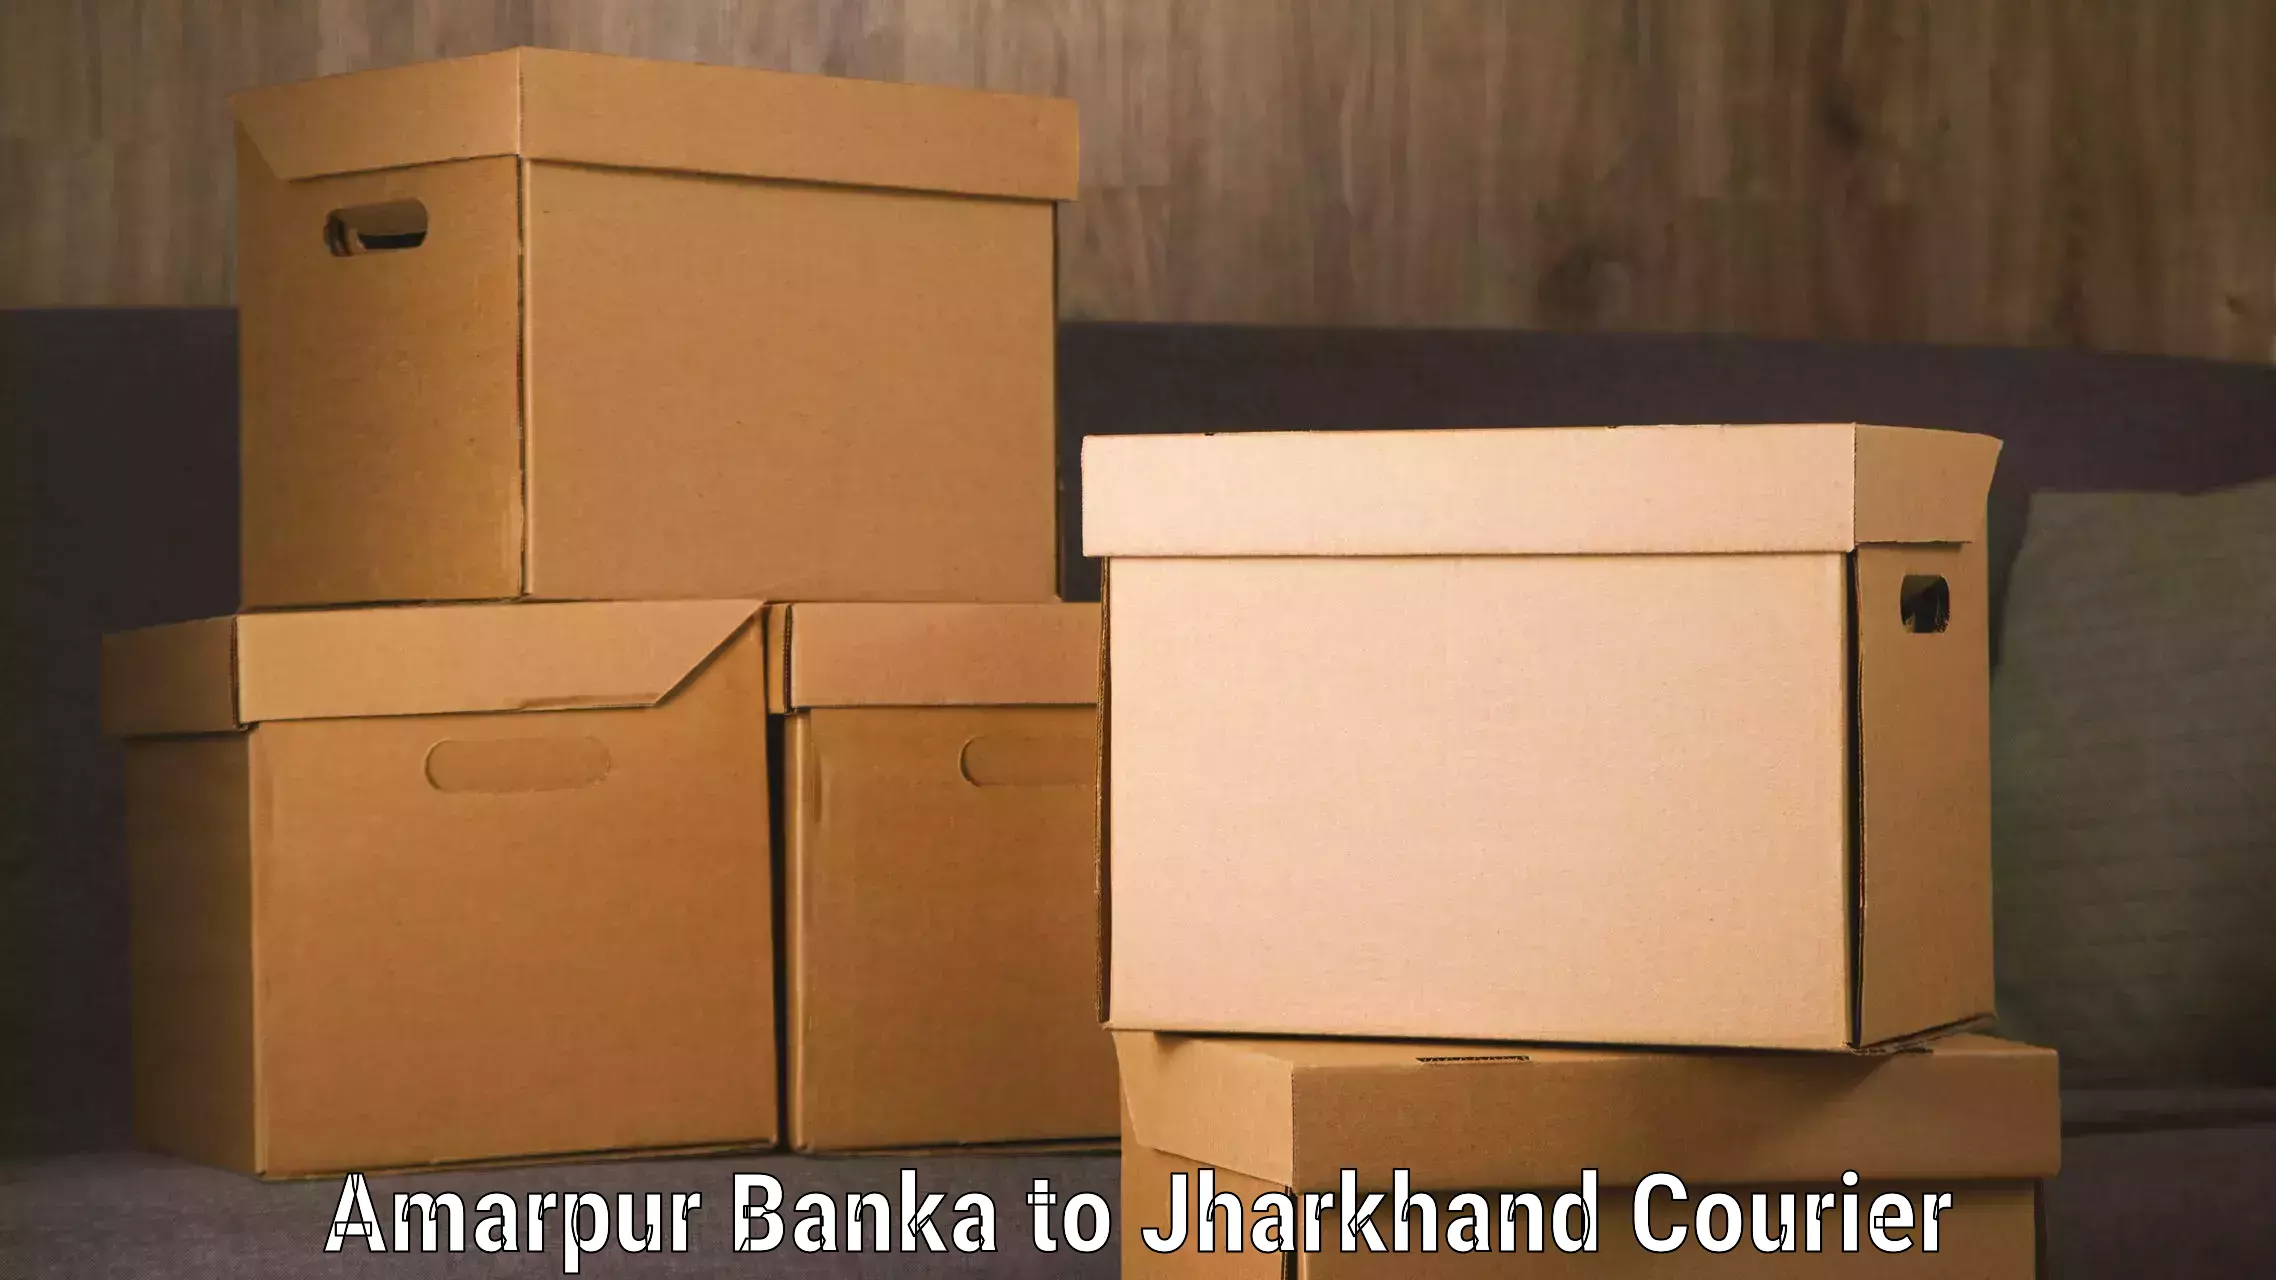 Reliable luggage courier Amarpur Banka to Chaibasa